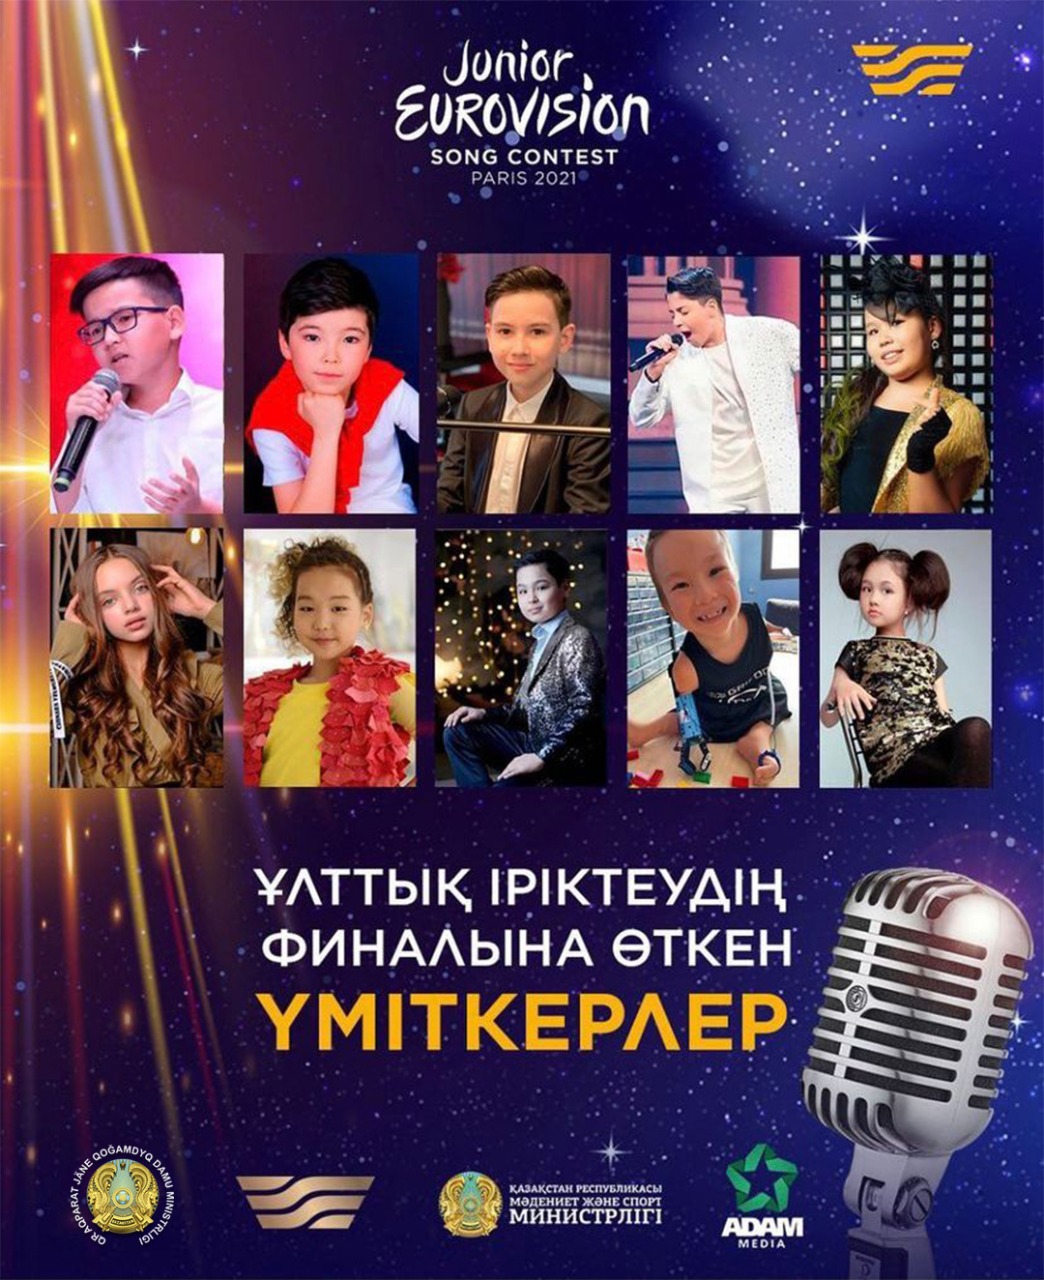 Определены 10 финалистов национального отбора «Junior Eurovision 2021»